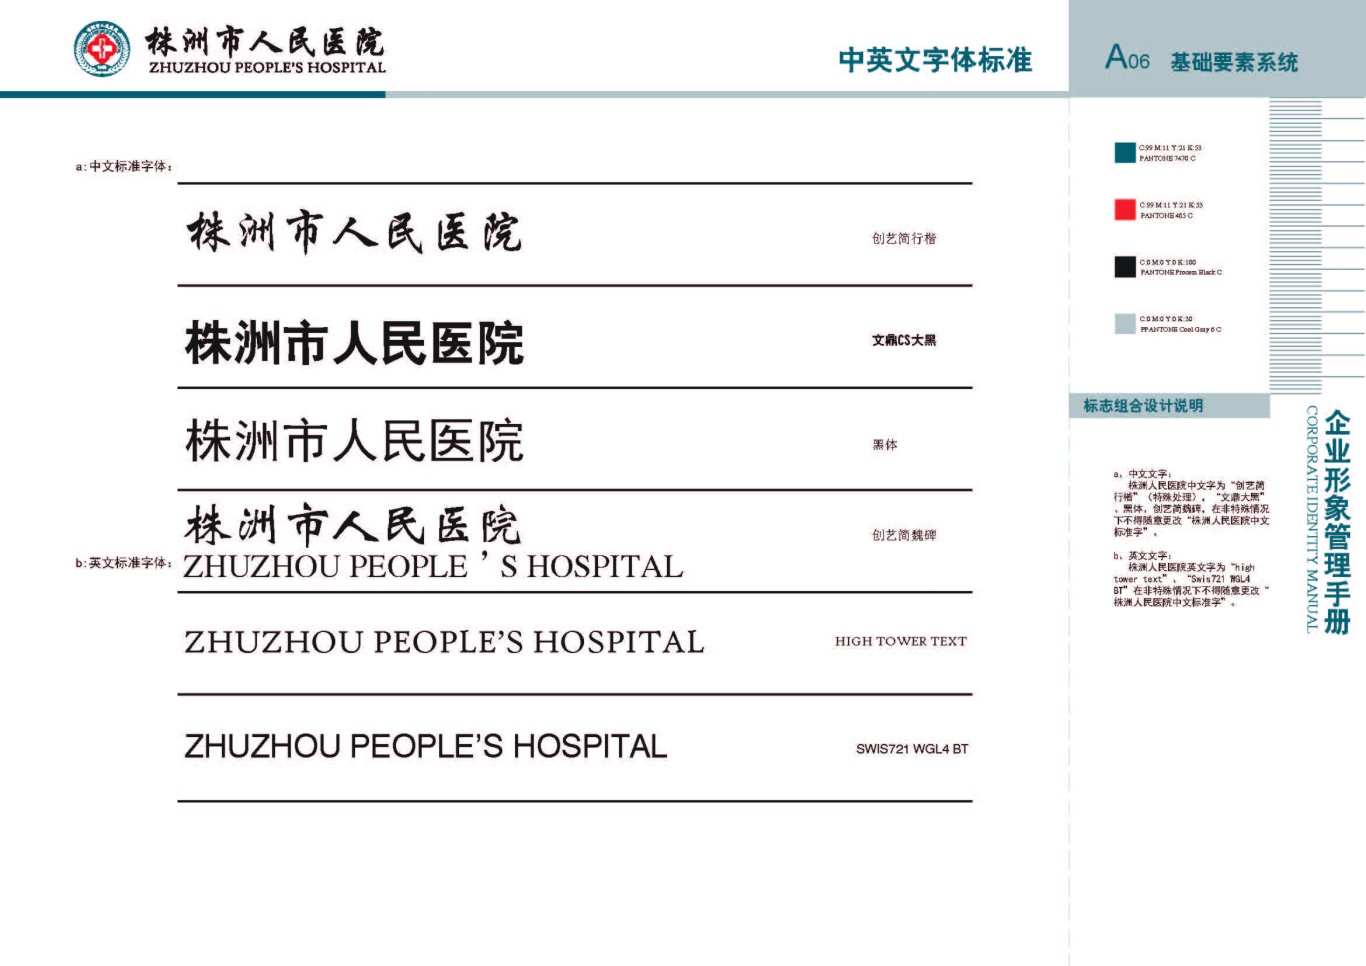 株洲市人民医院vis手册设计项目图9